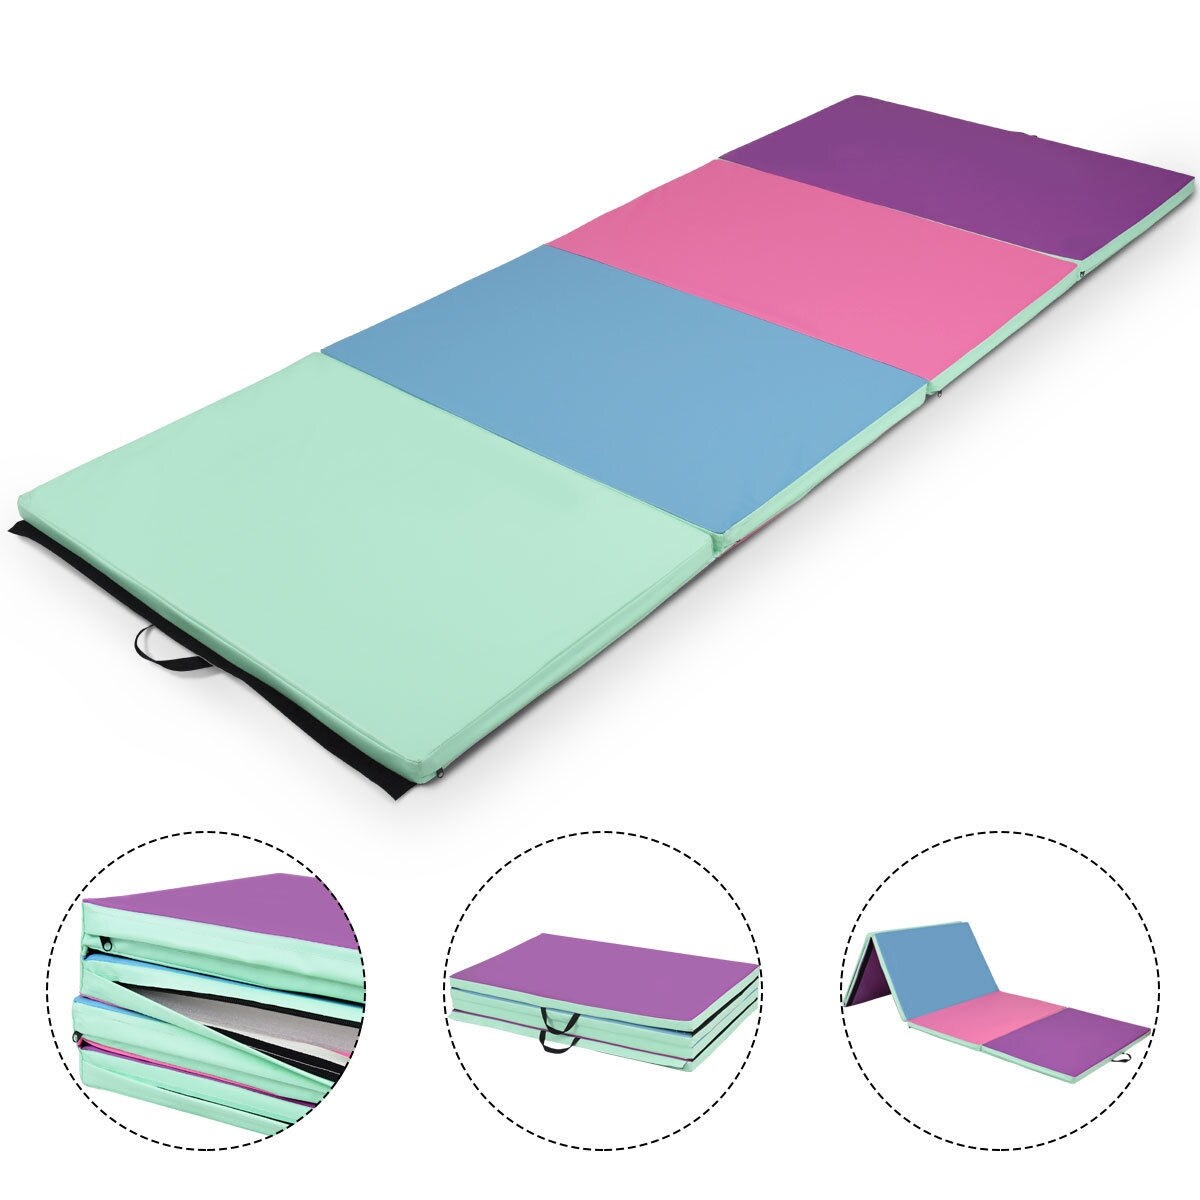 portable gymnastics mat